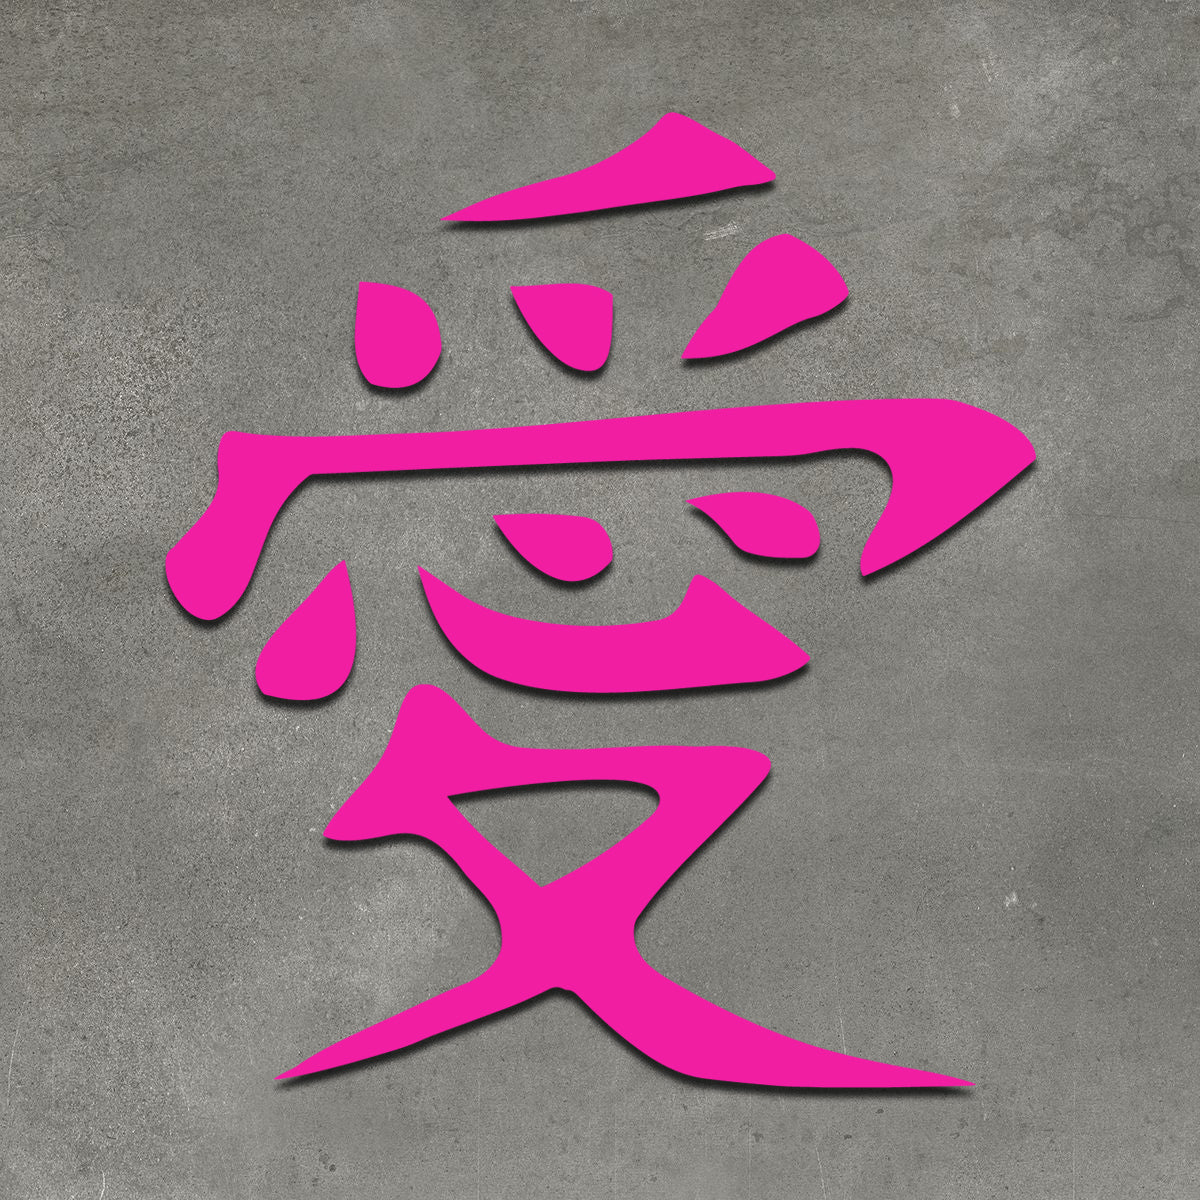 Símbolo do Gaara para Nick no Free Fire: Kanji do Amor Copiar e Colar 愛 -  Free Fire Central